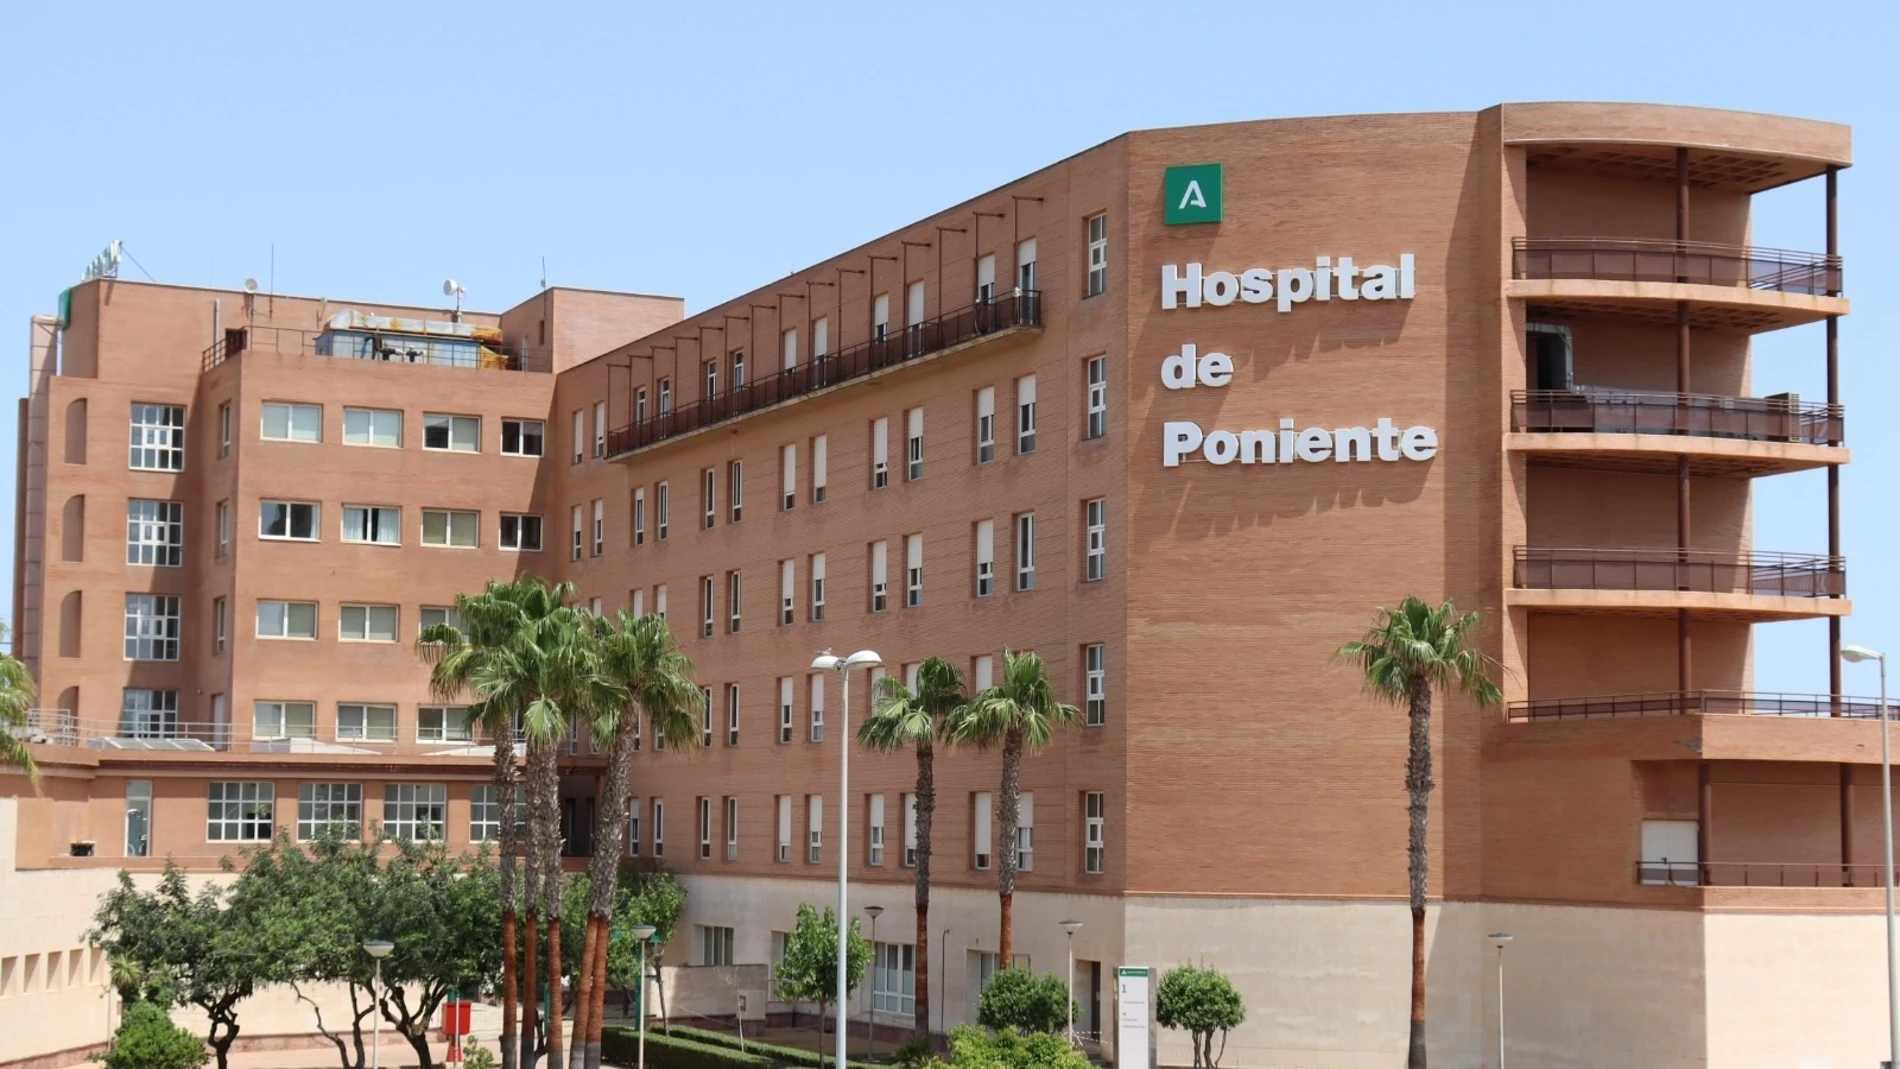 Hospital Universitario Poniente de El Ejido (Almería)